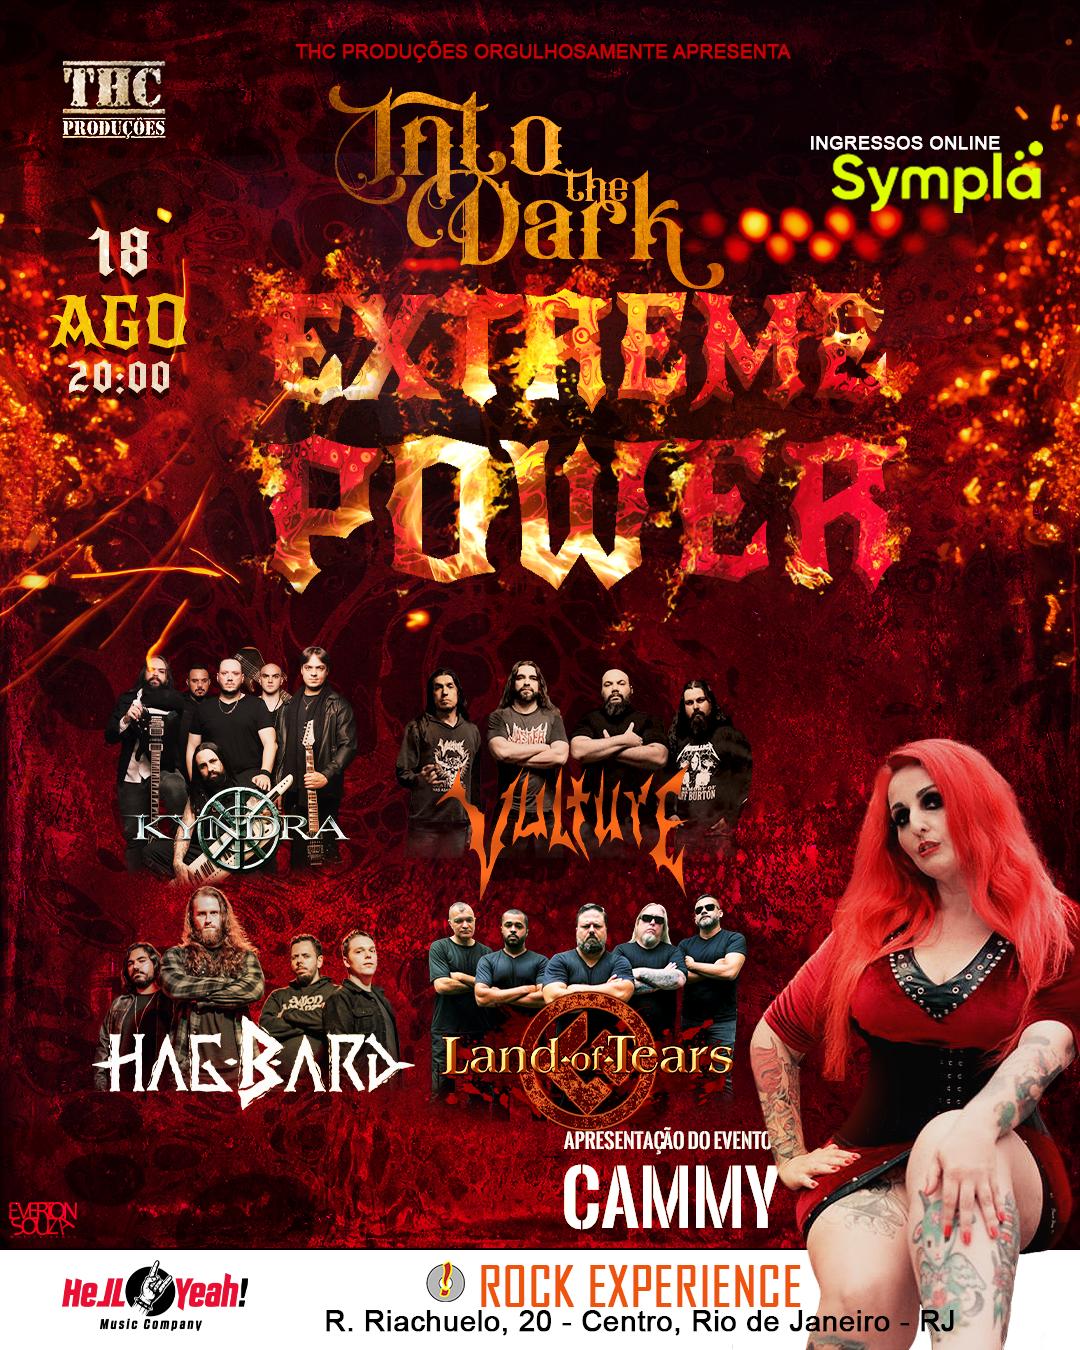 Into the Dark Extreme Power apresenta Kyndra, Vulture, Land of Tears, Hagbard no Rio de Janeiro em 18 de Agosto